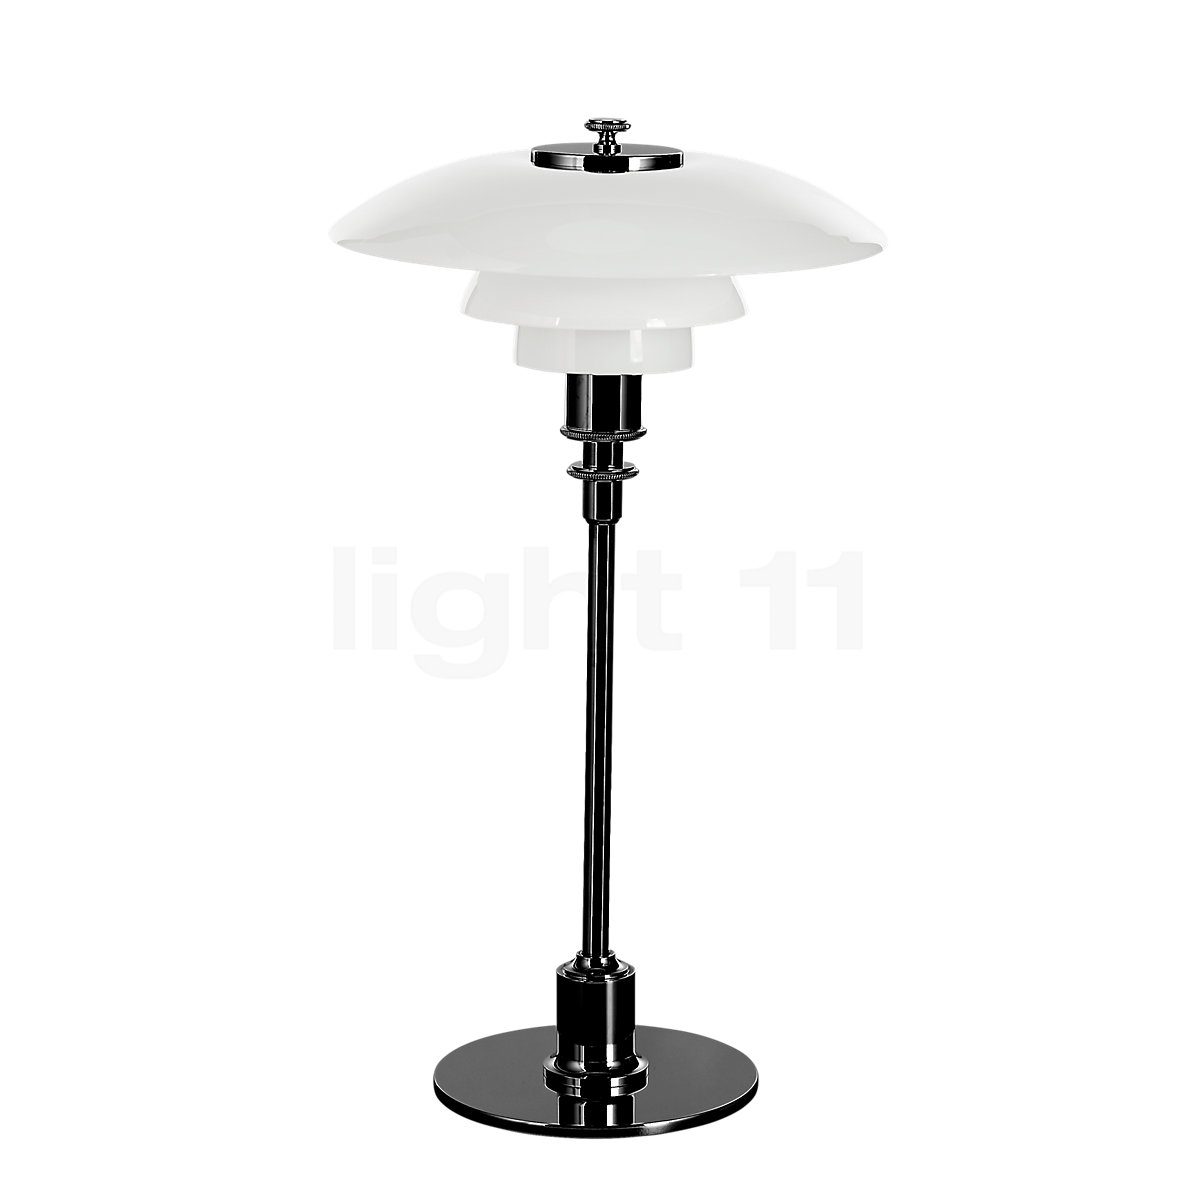 Louis Poulsen PH 2/1 Table Lamp - Black Metalized